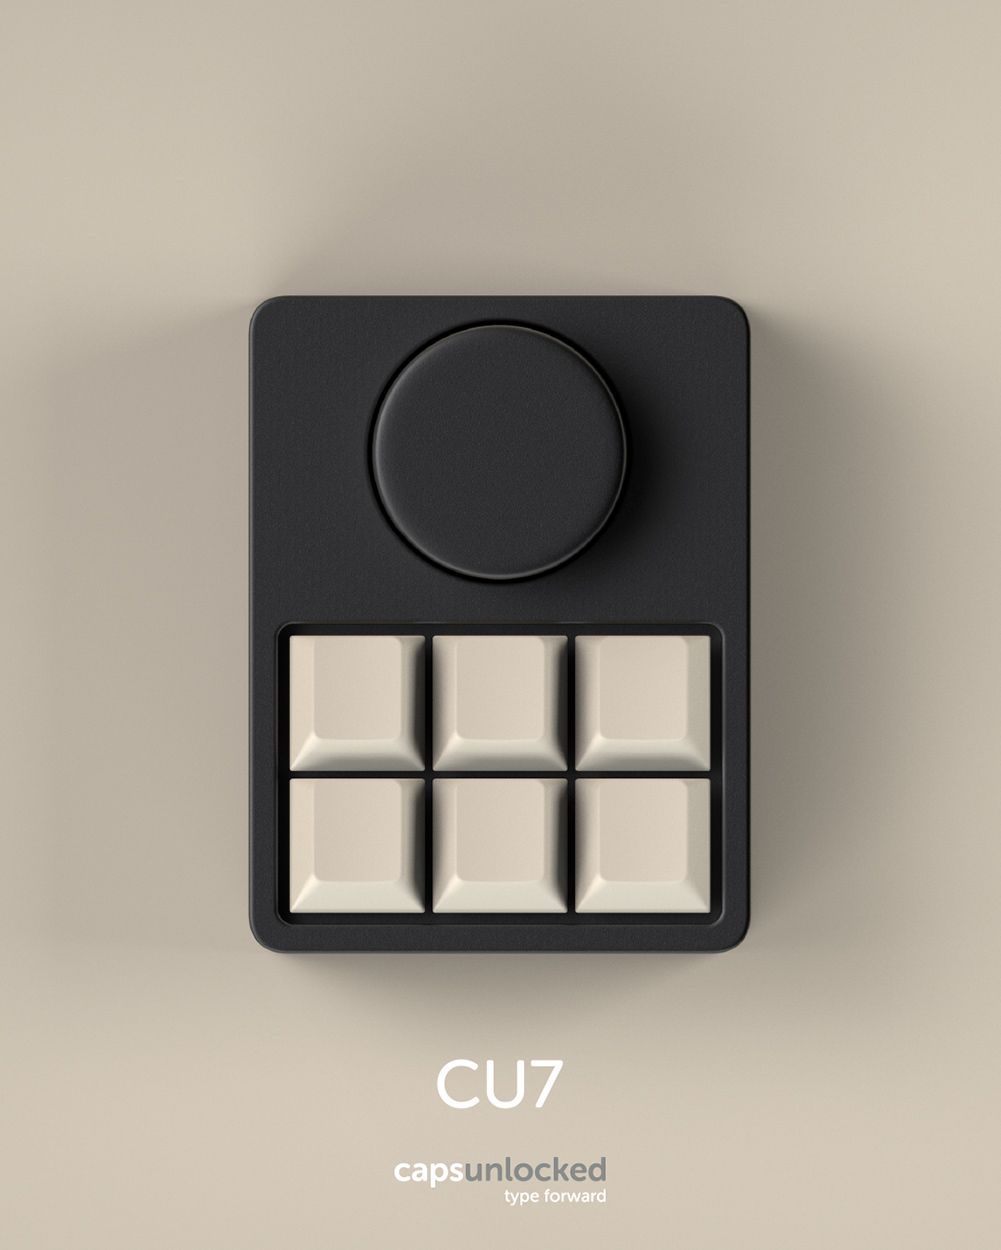 The CU7 Mechanical Keyboard